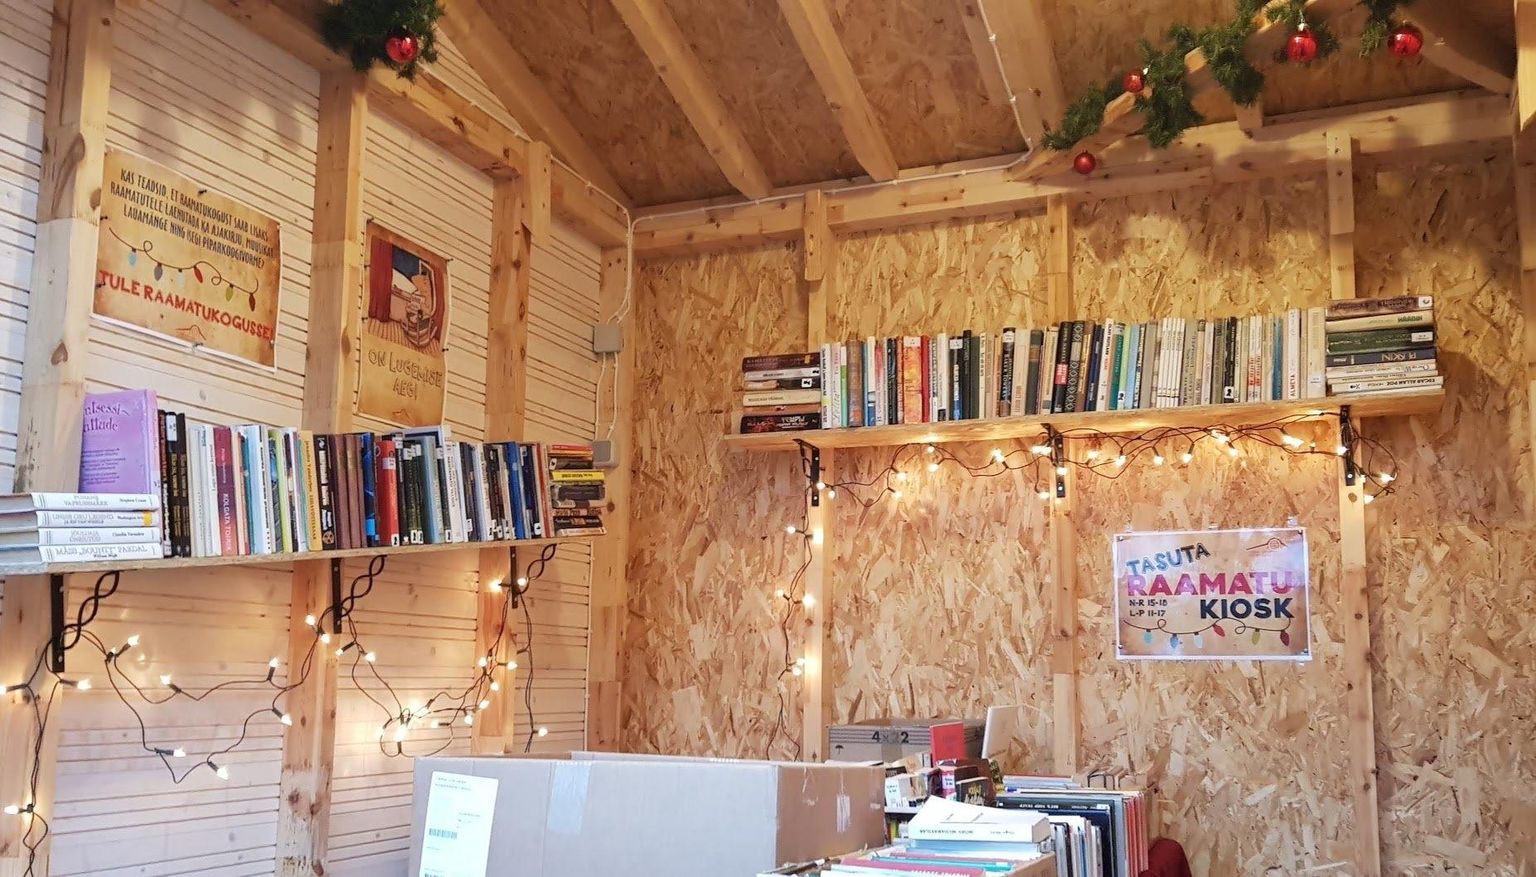 Lääne-Virumaa keskraamatukogu avas Rakvere jõuluväljaku veeres "Tasuta raamatu kioski".